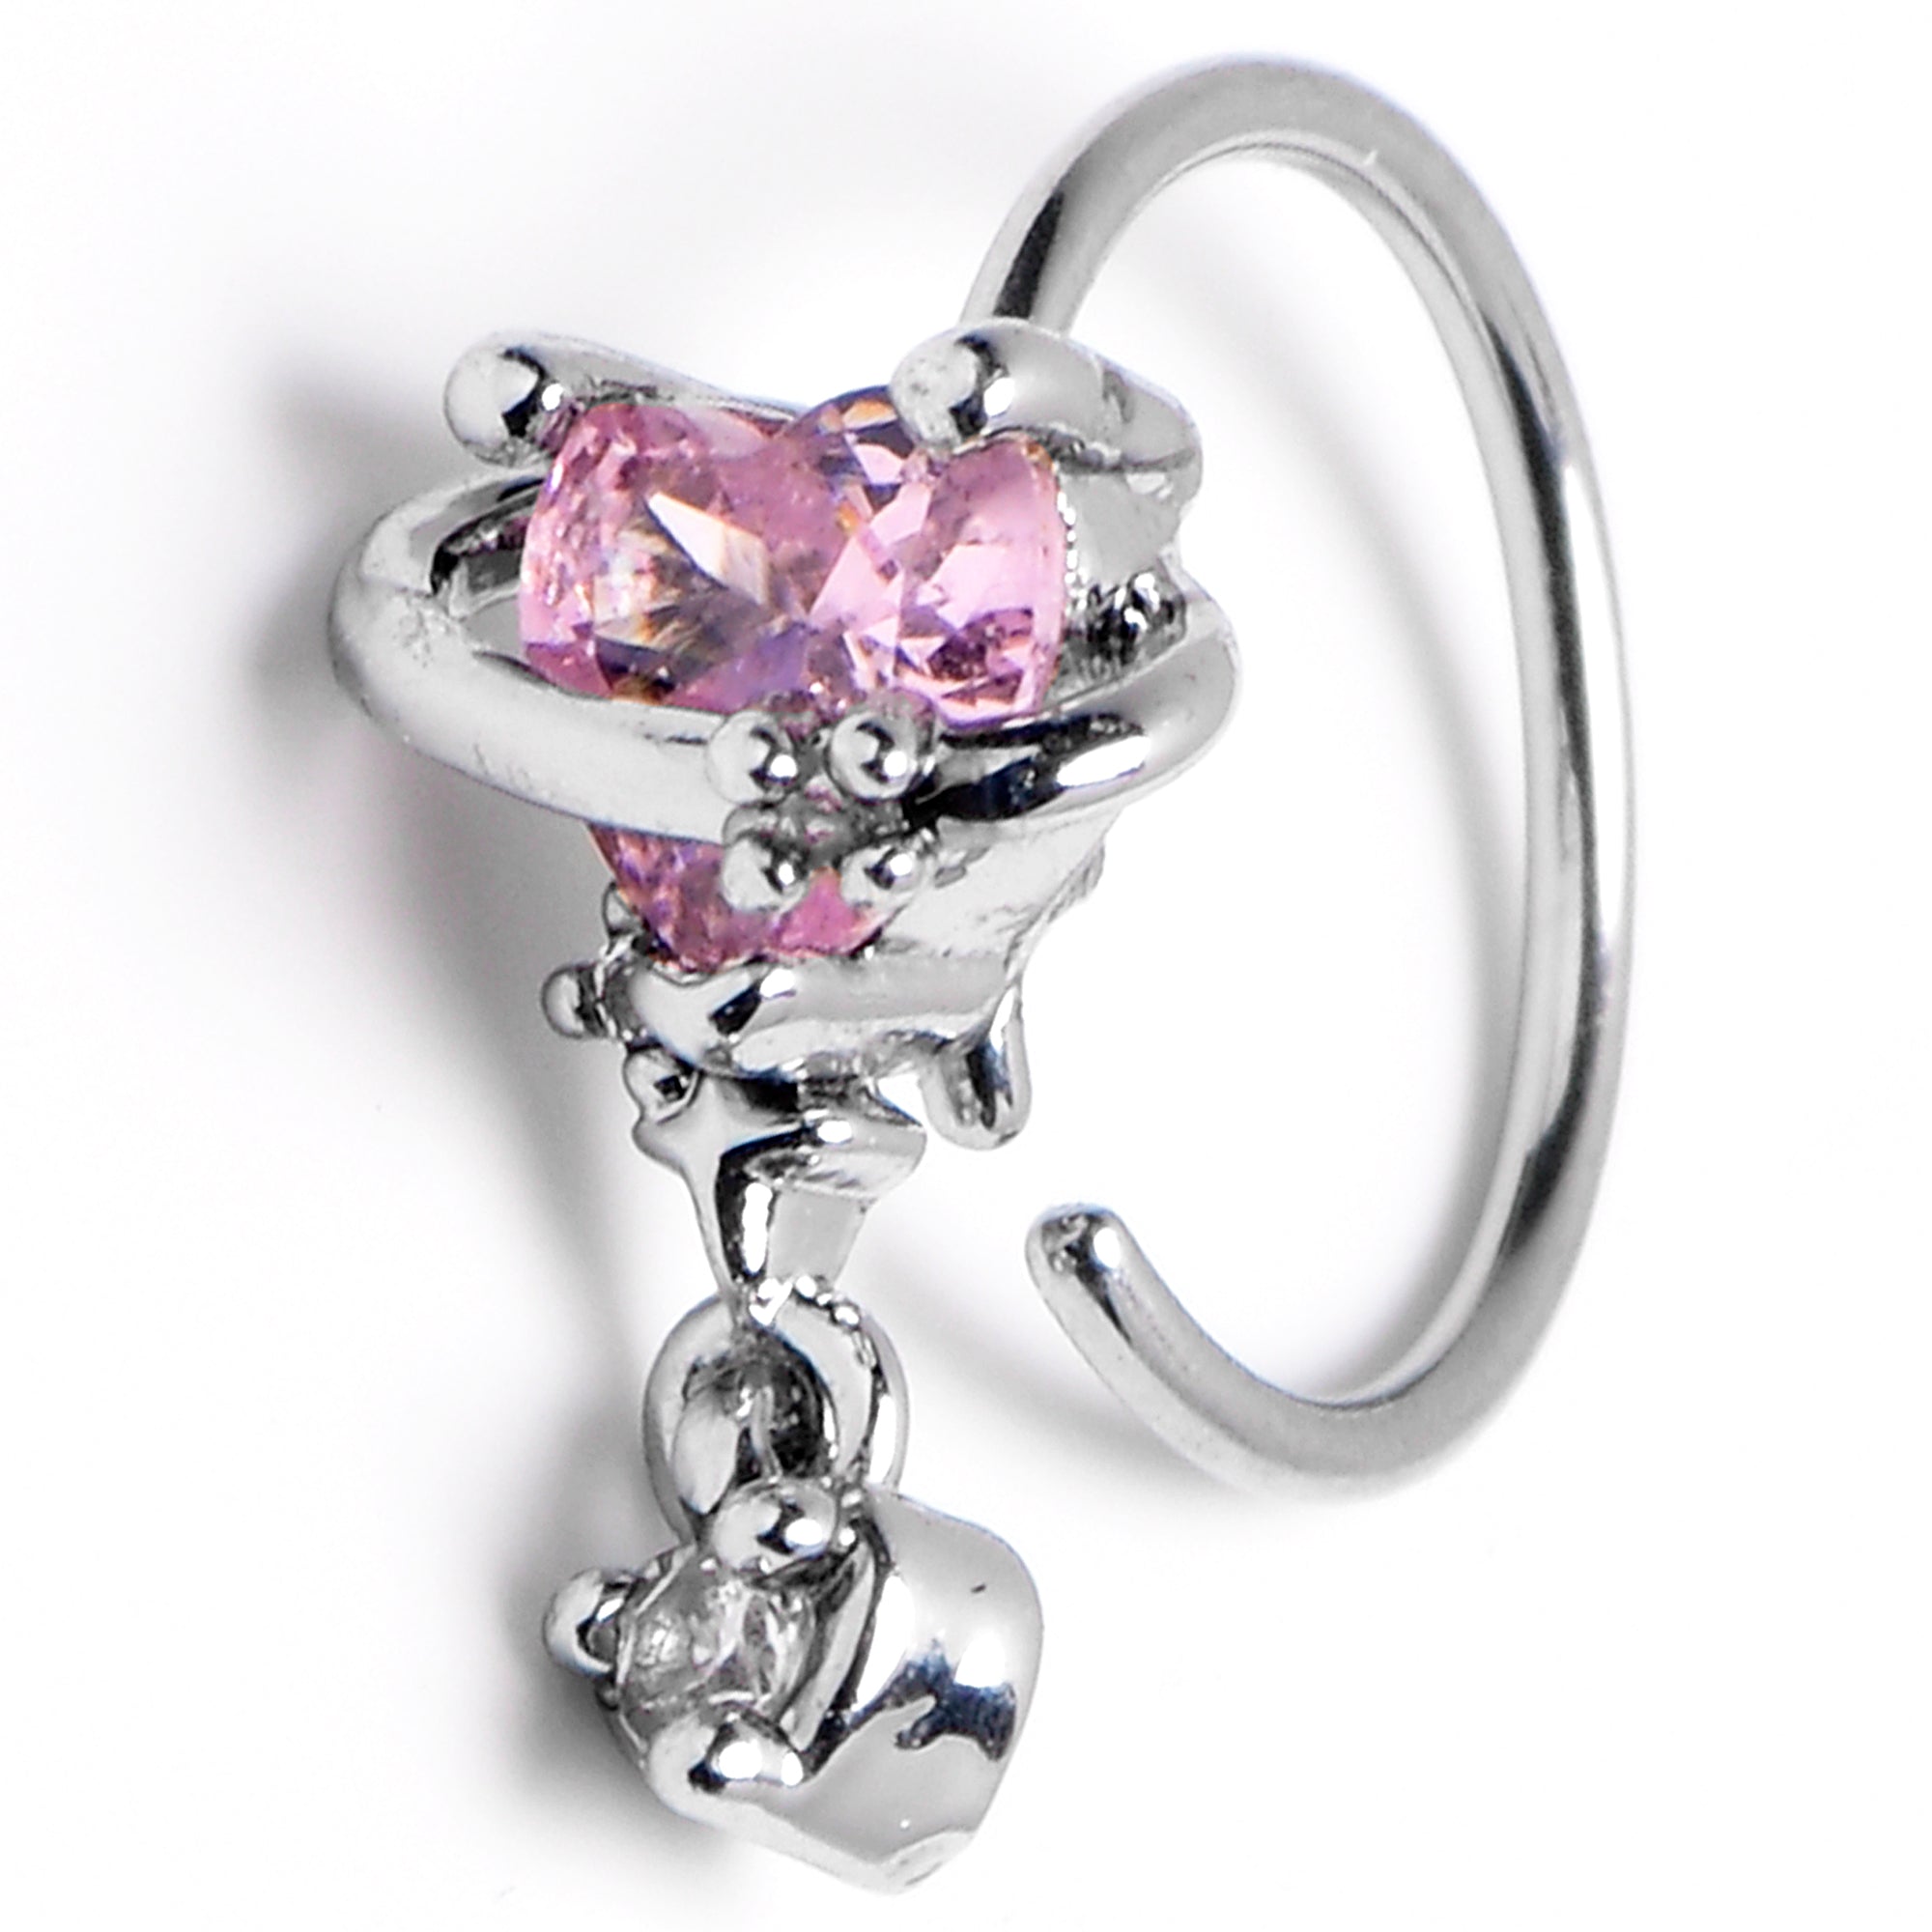 Pandora Silver Cz Pink Hearts Ring